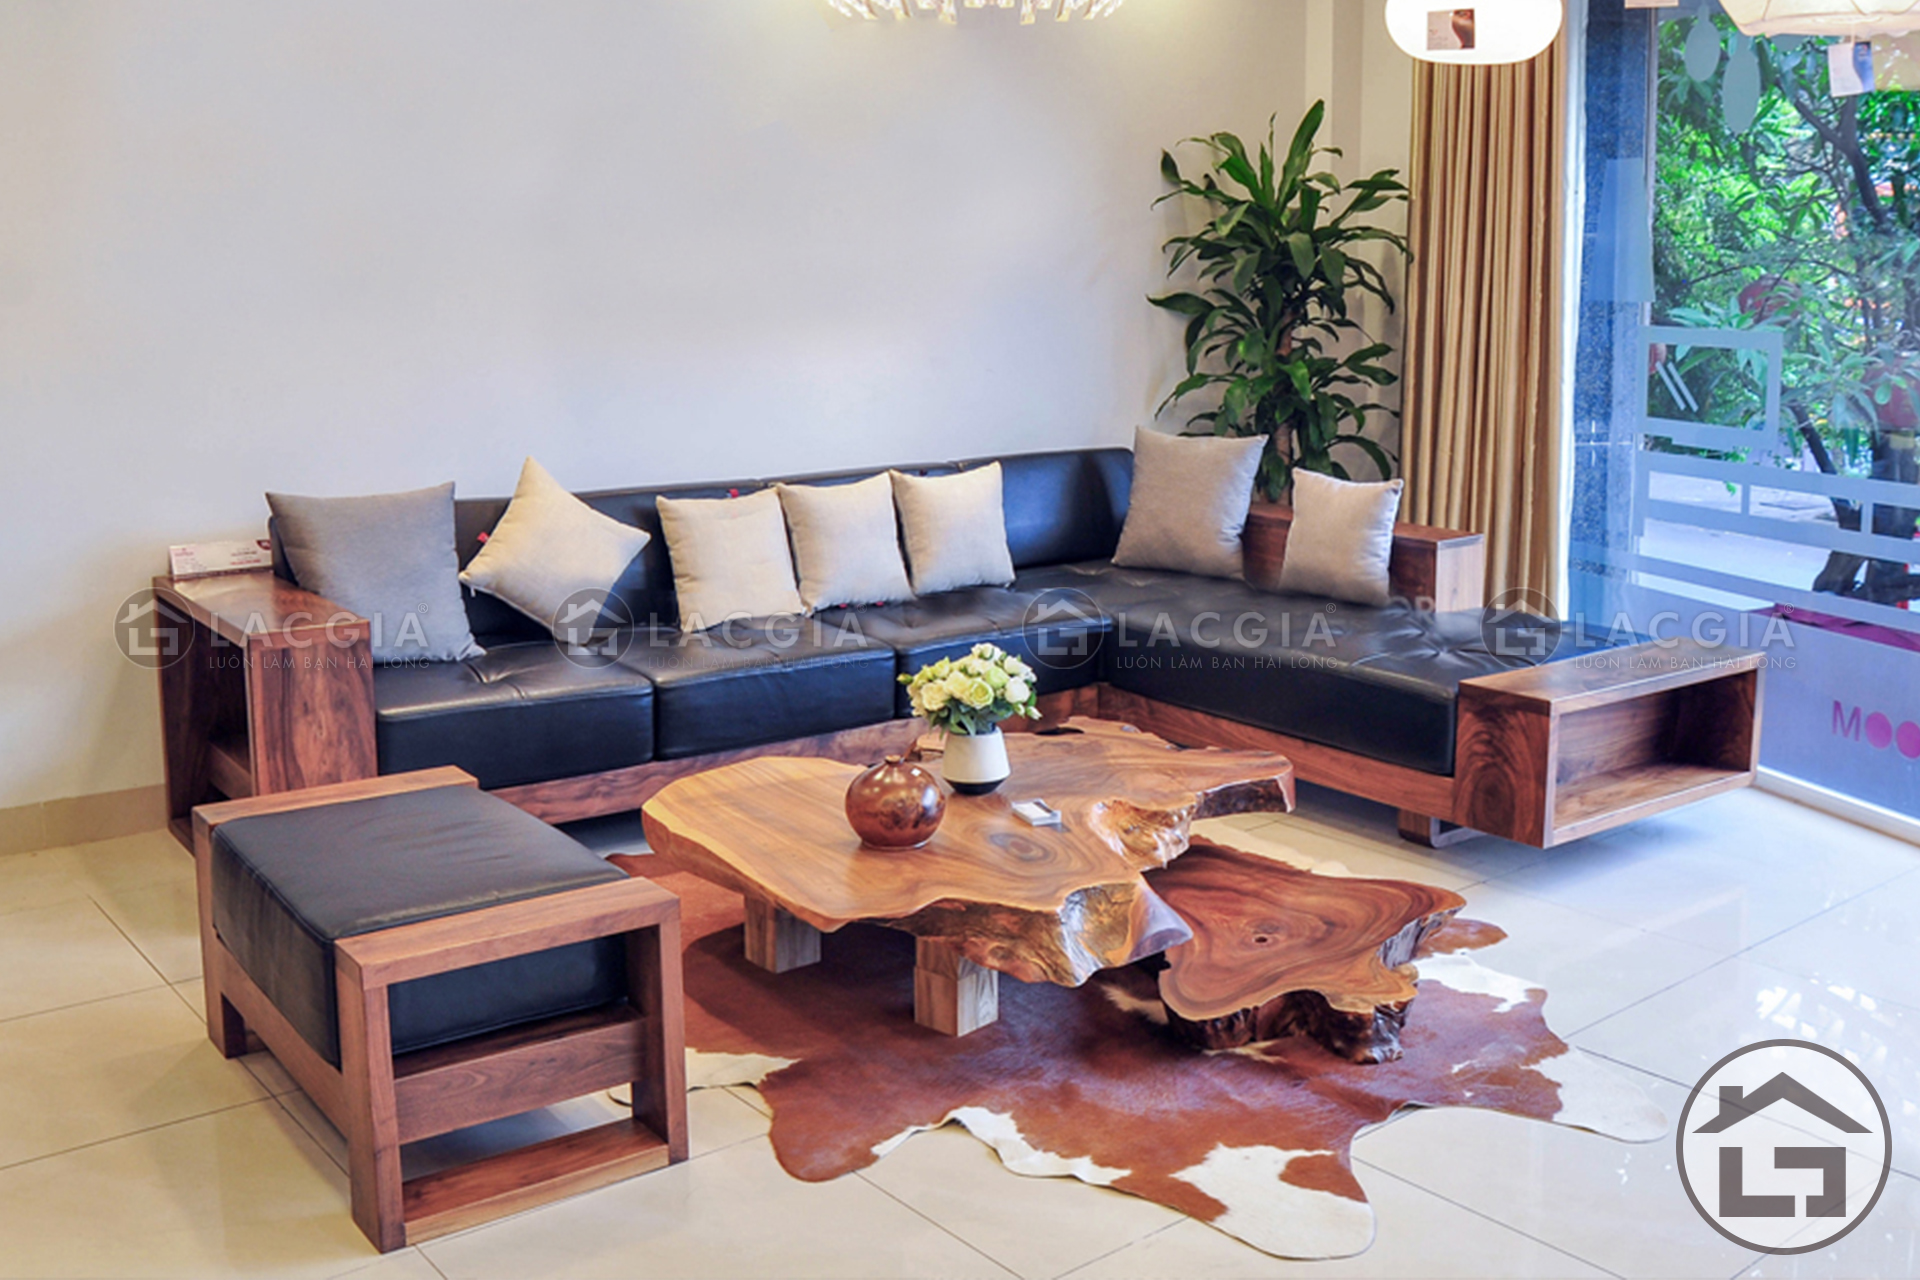 Sofa go chu L hien dai 1 - Lợi ích khi mua sofa gỗ đệm nỉ cho không gian phòng khách